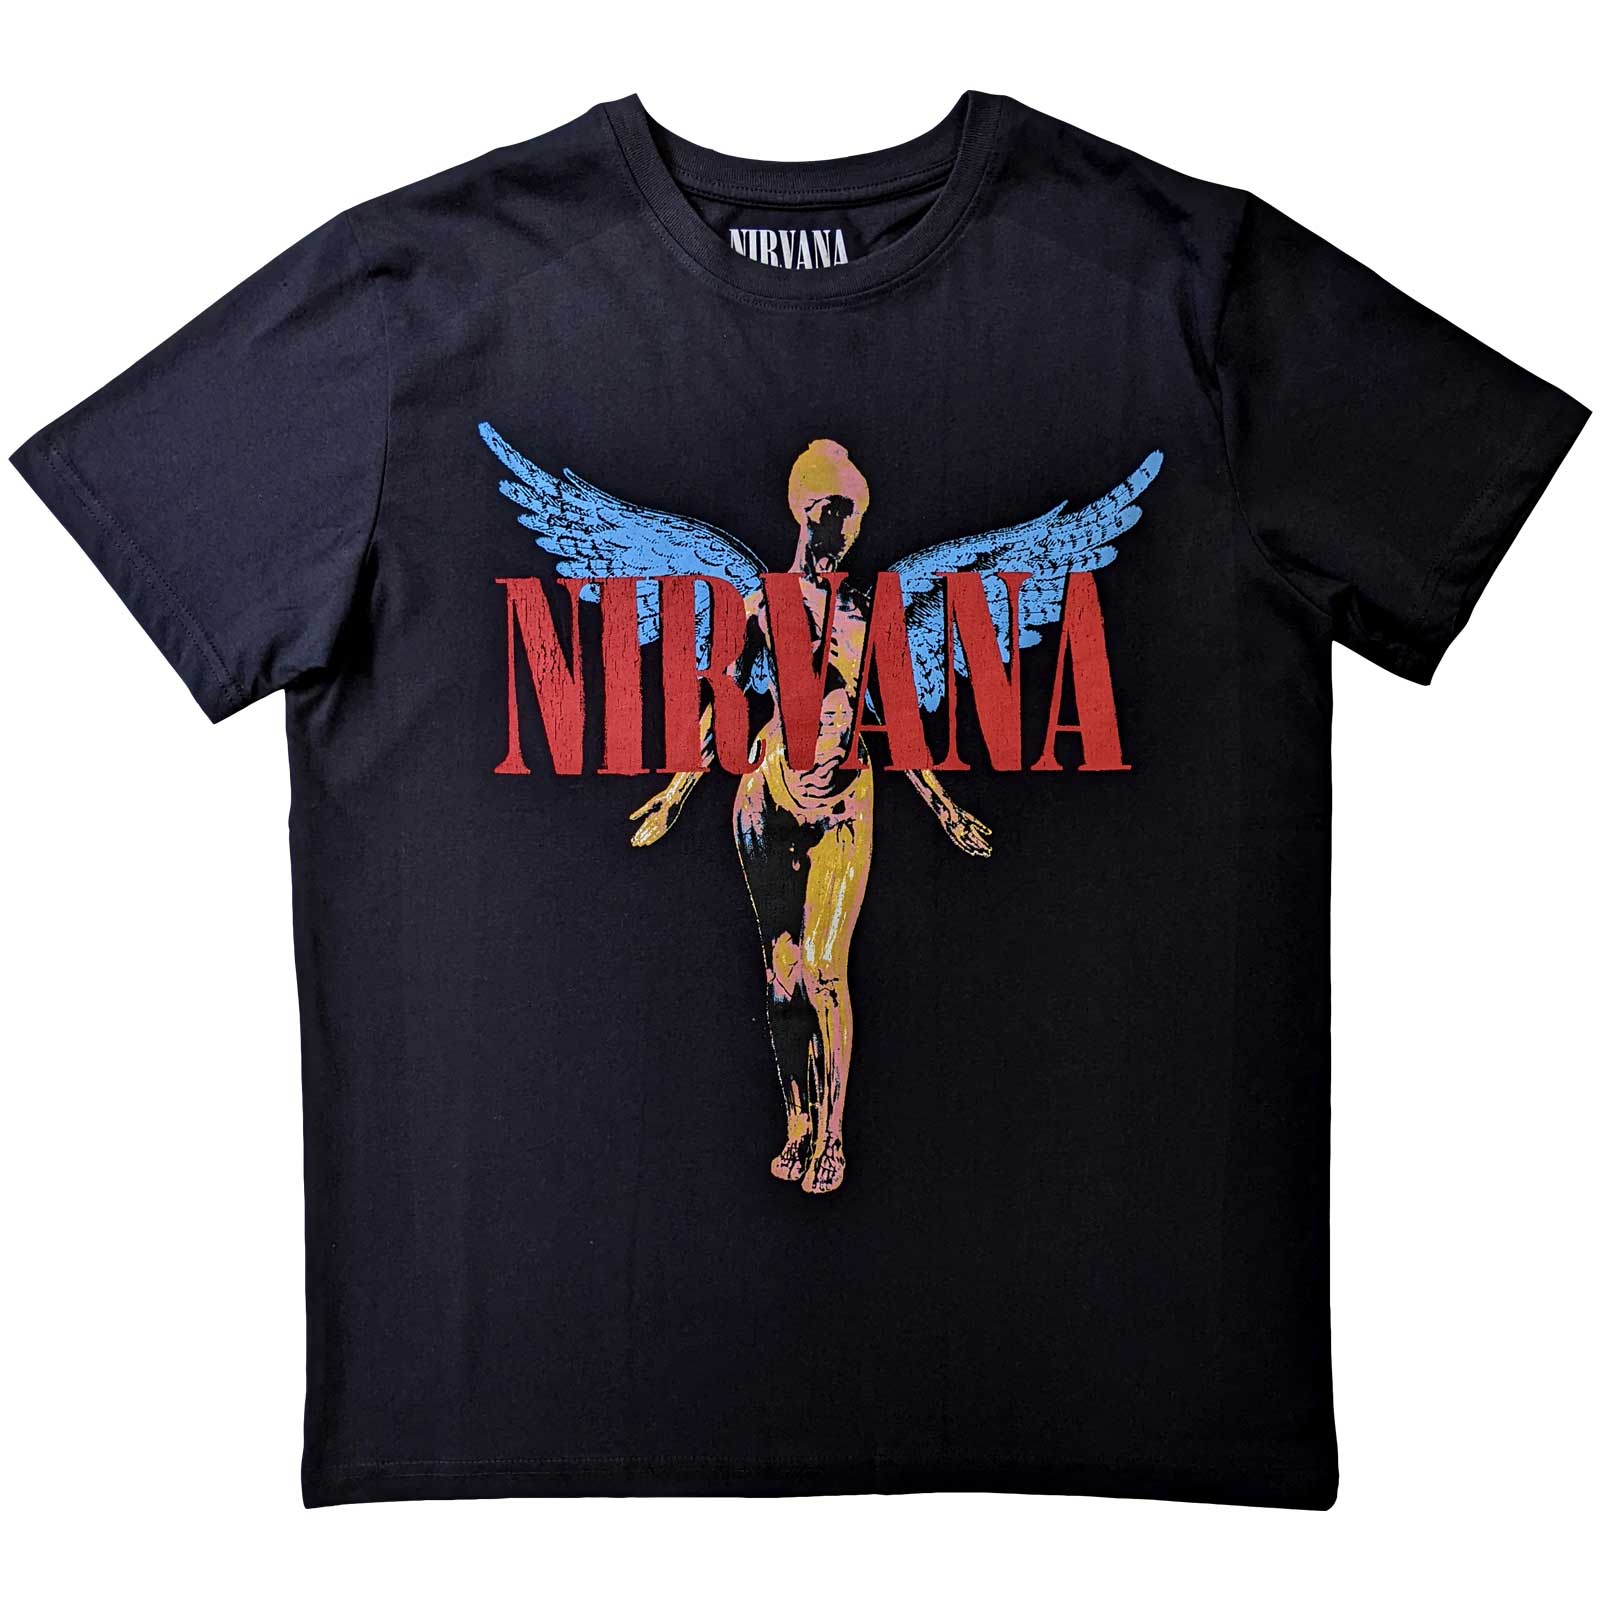 Nirvana - In Utero Black Shirt